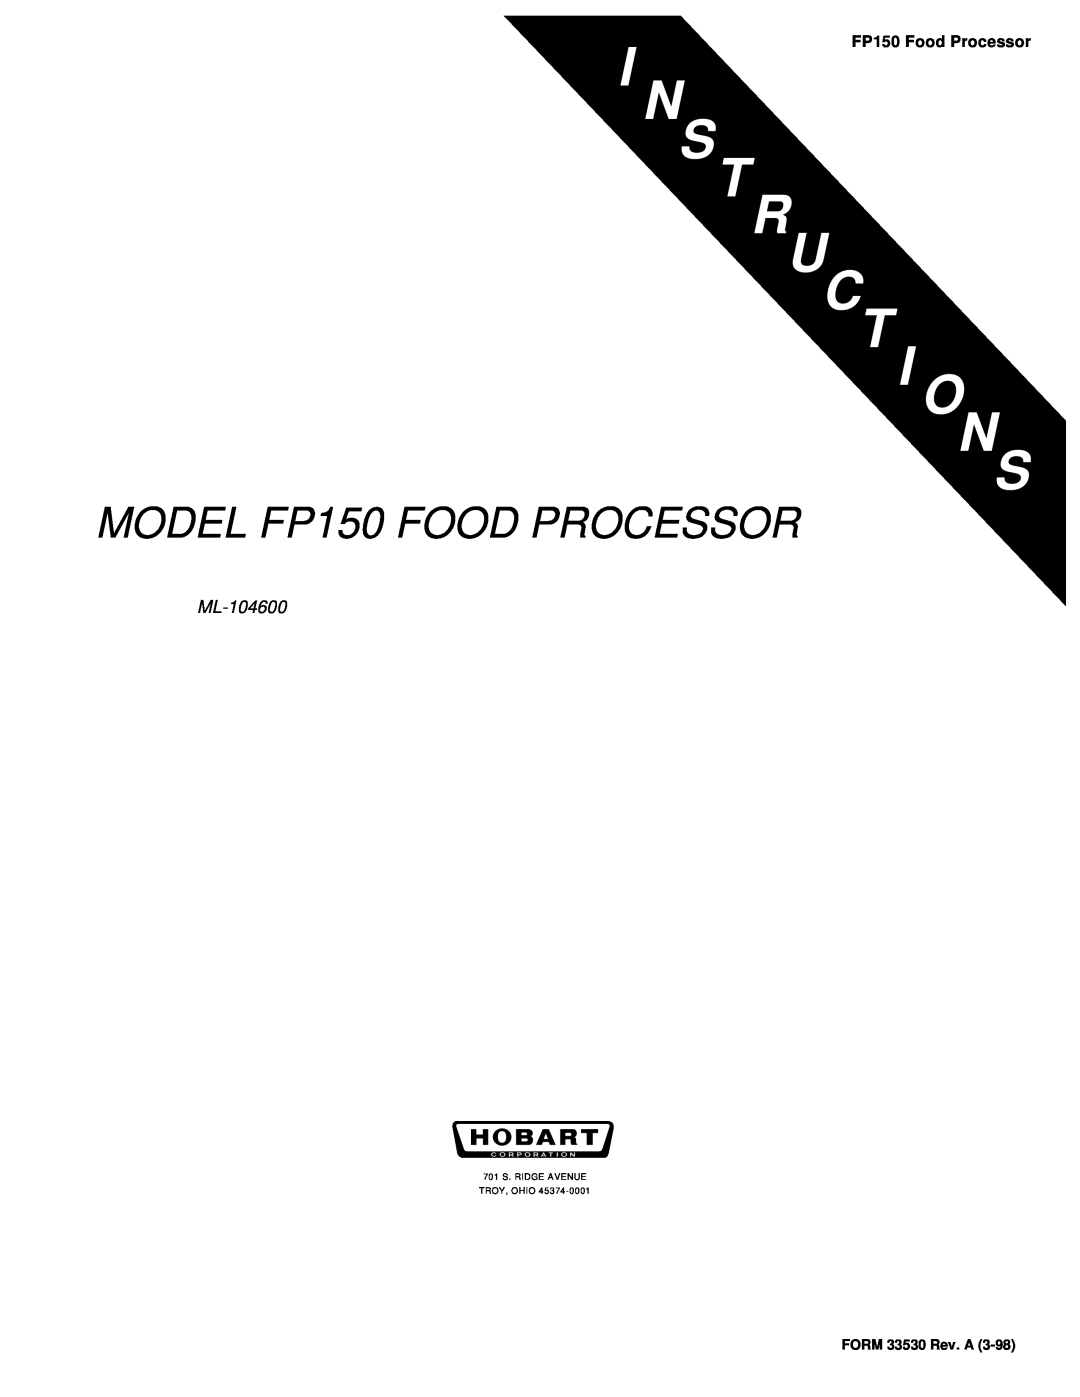 Hobart manual N S Tru Ct I O Ns, MODEL FP150 FOOD PROCESSOR, ML-104600, FP150 Food Processor, FORM 33530 Rev. A 